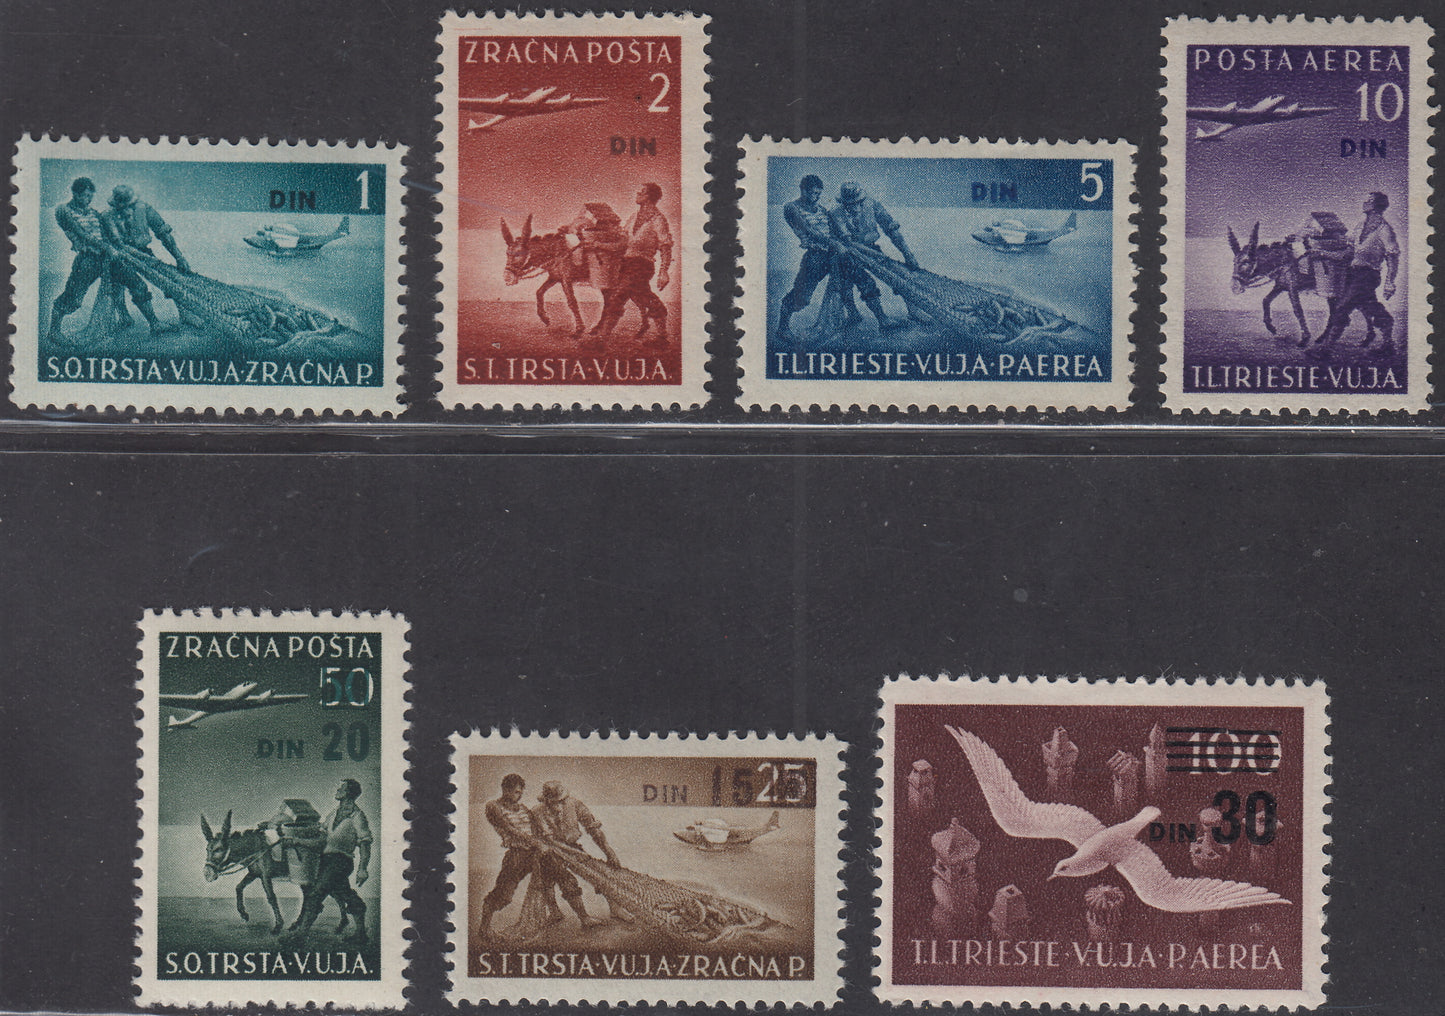 1949 - Posta Aerea, soggetti e formati vari con soprastampa e nuovo valore, serie completa di 7 valori nuova integra (10/16)